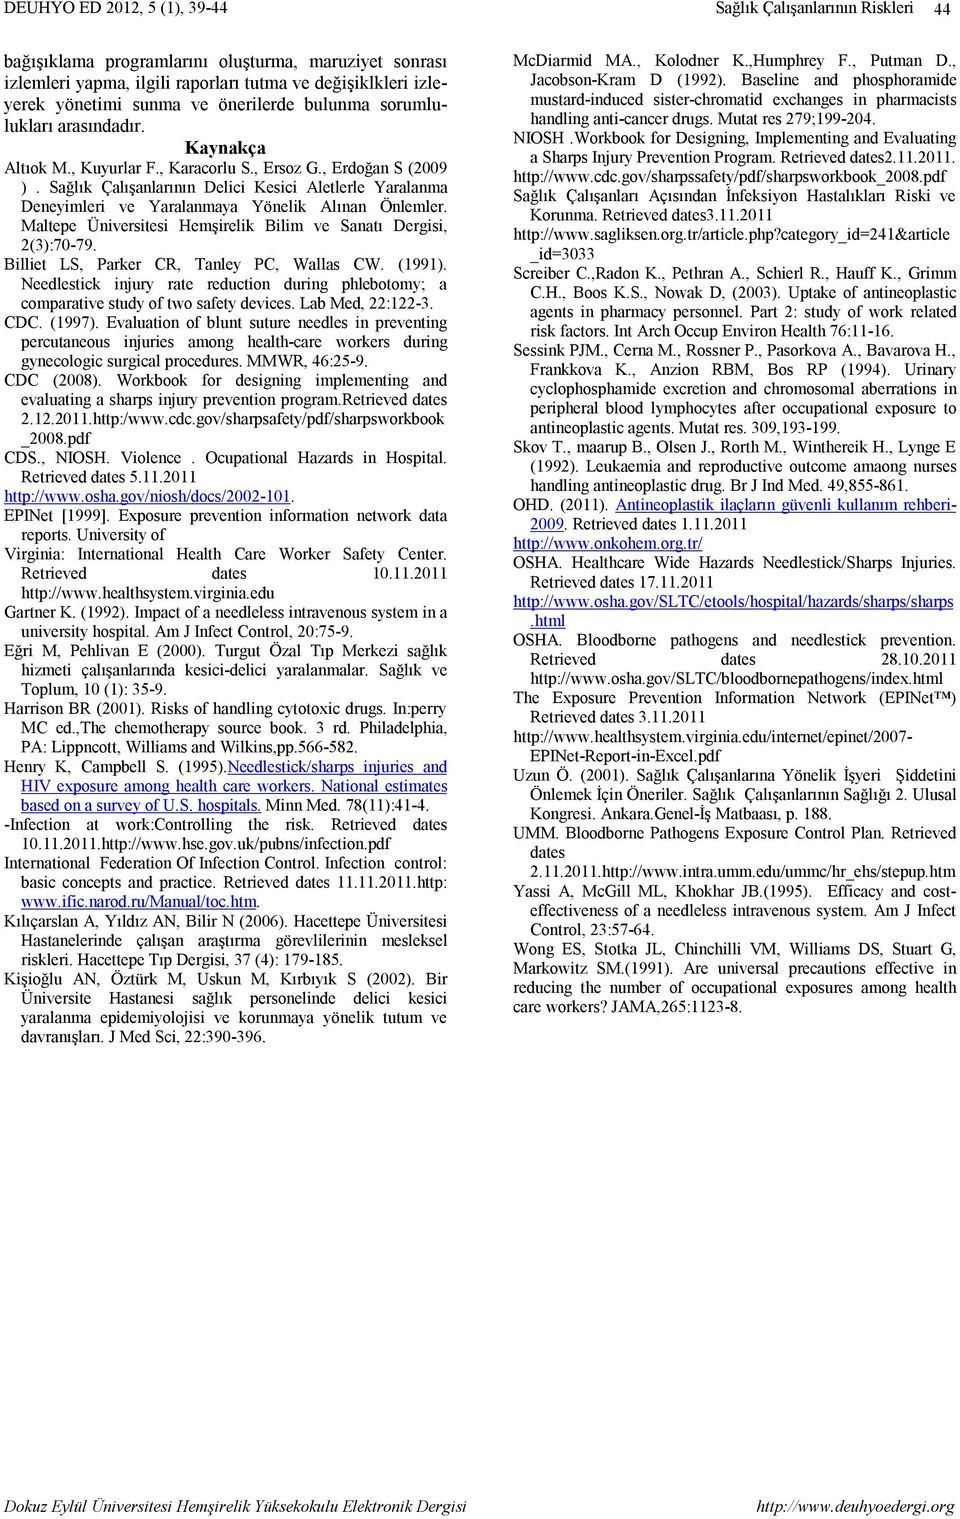 Maltepe Üniversitesi Hemşirelik Bilim ve Sanatı Dergisi, 2(3):70-79. Billiet LS, Parker CR, Tanley PC, Wallas CW. (1991).